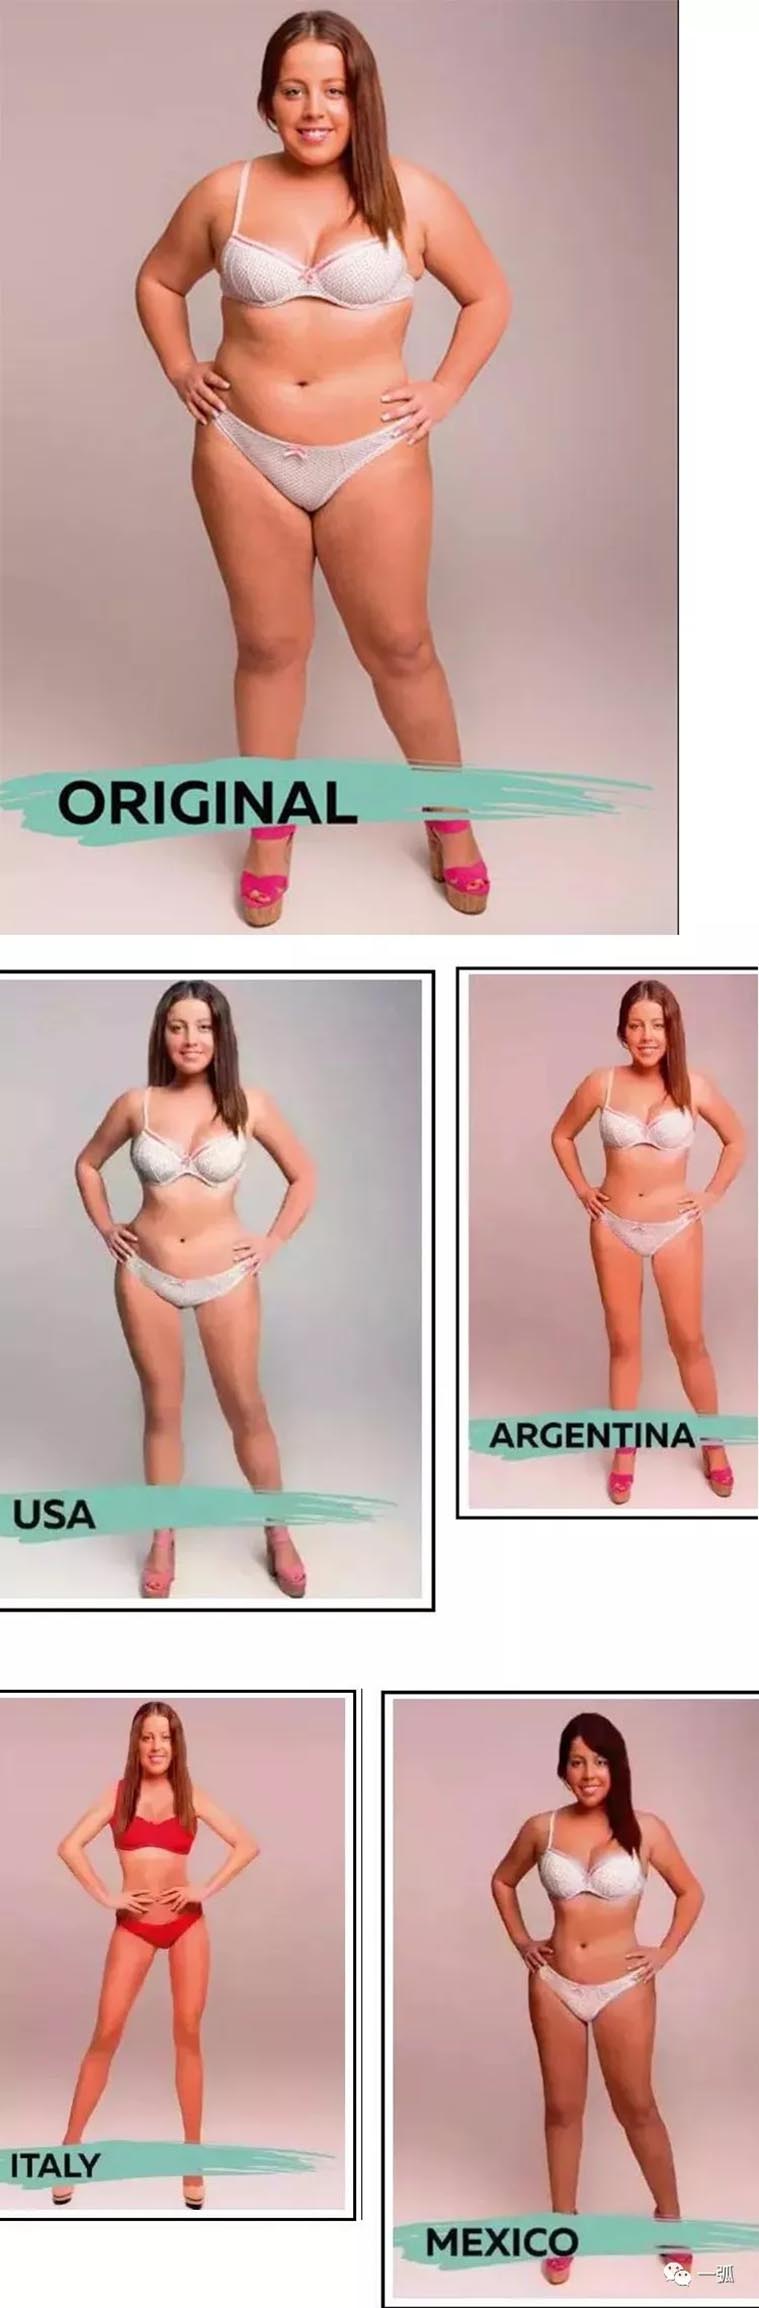 经18个国家设计师PS过的胖妞照片